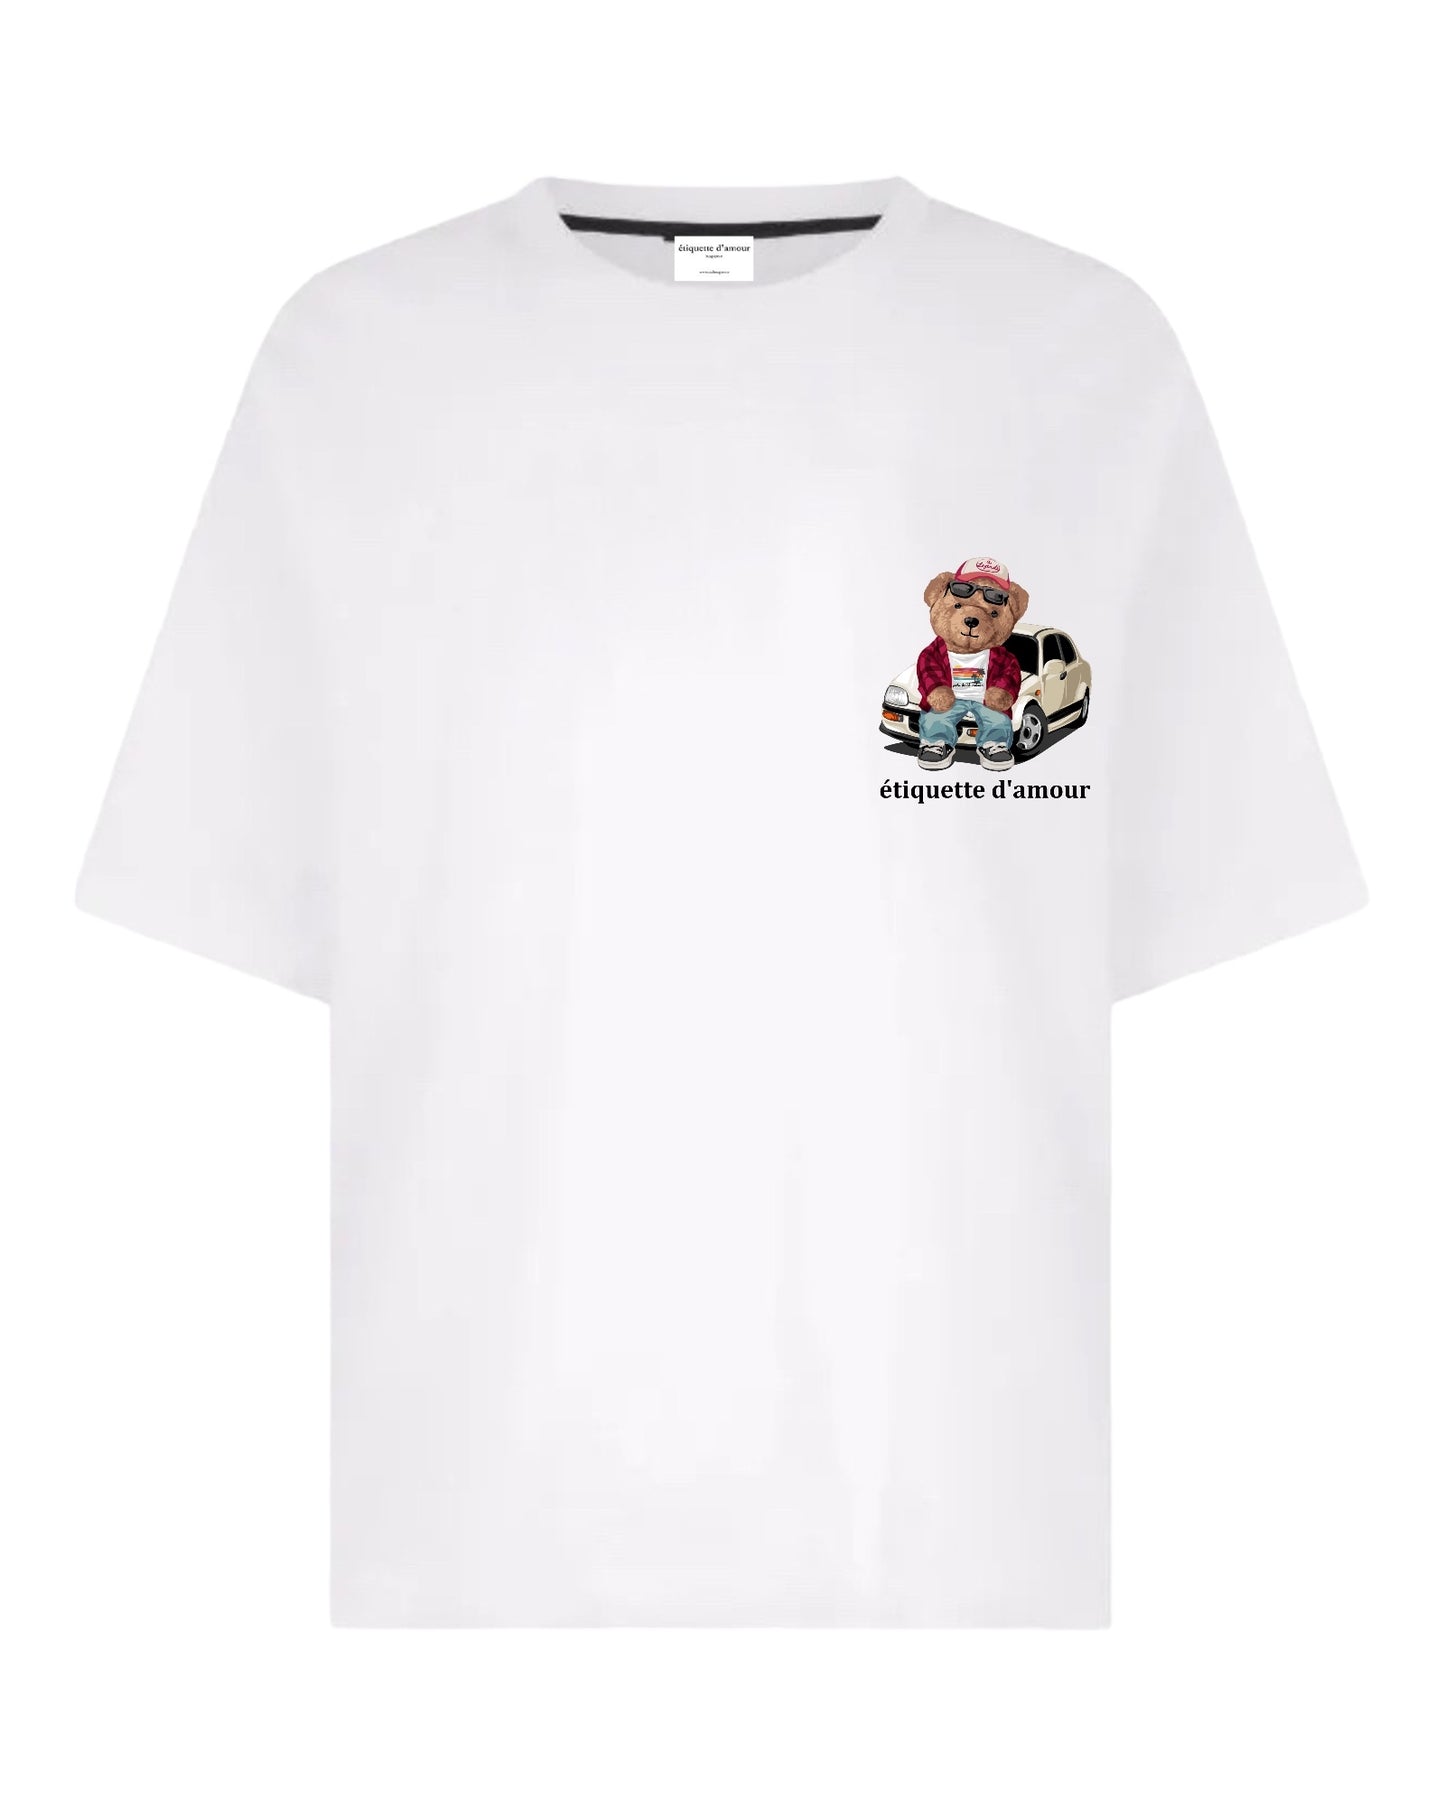 XLuxe T-Shirt #0020